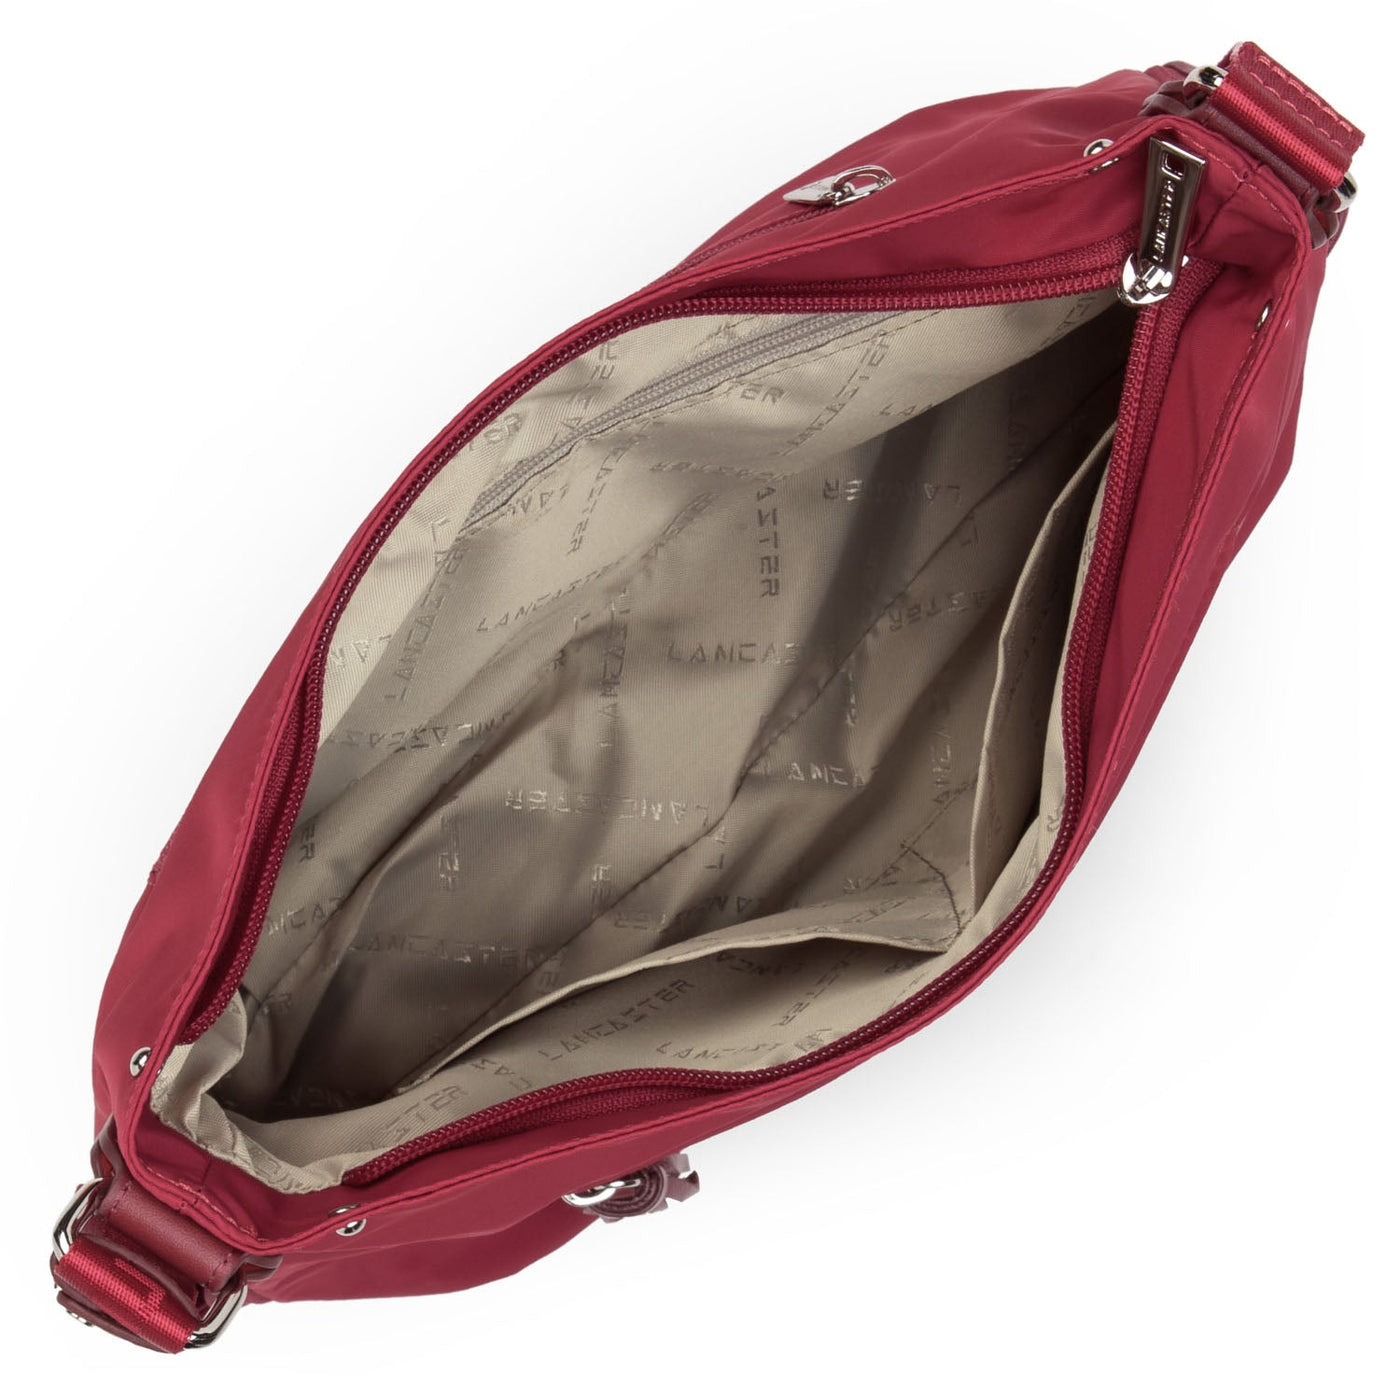 shoulder bag - basic pompon #couleur_framboise